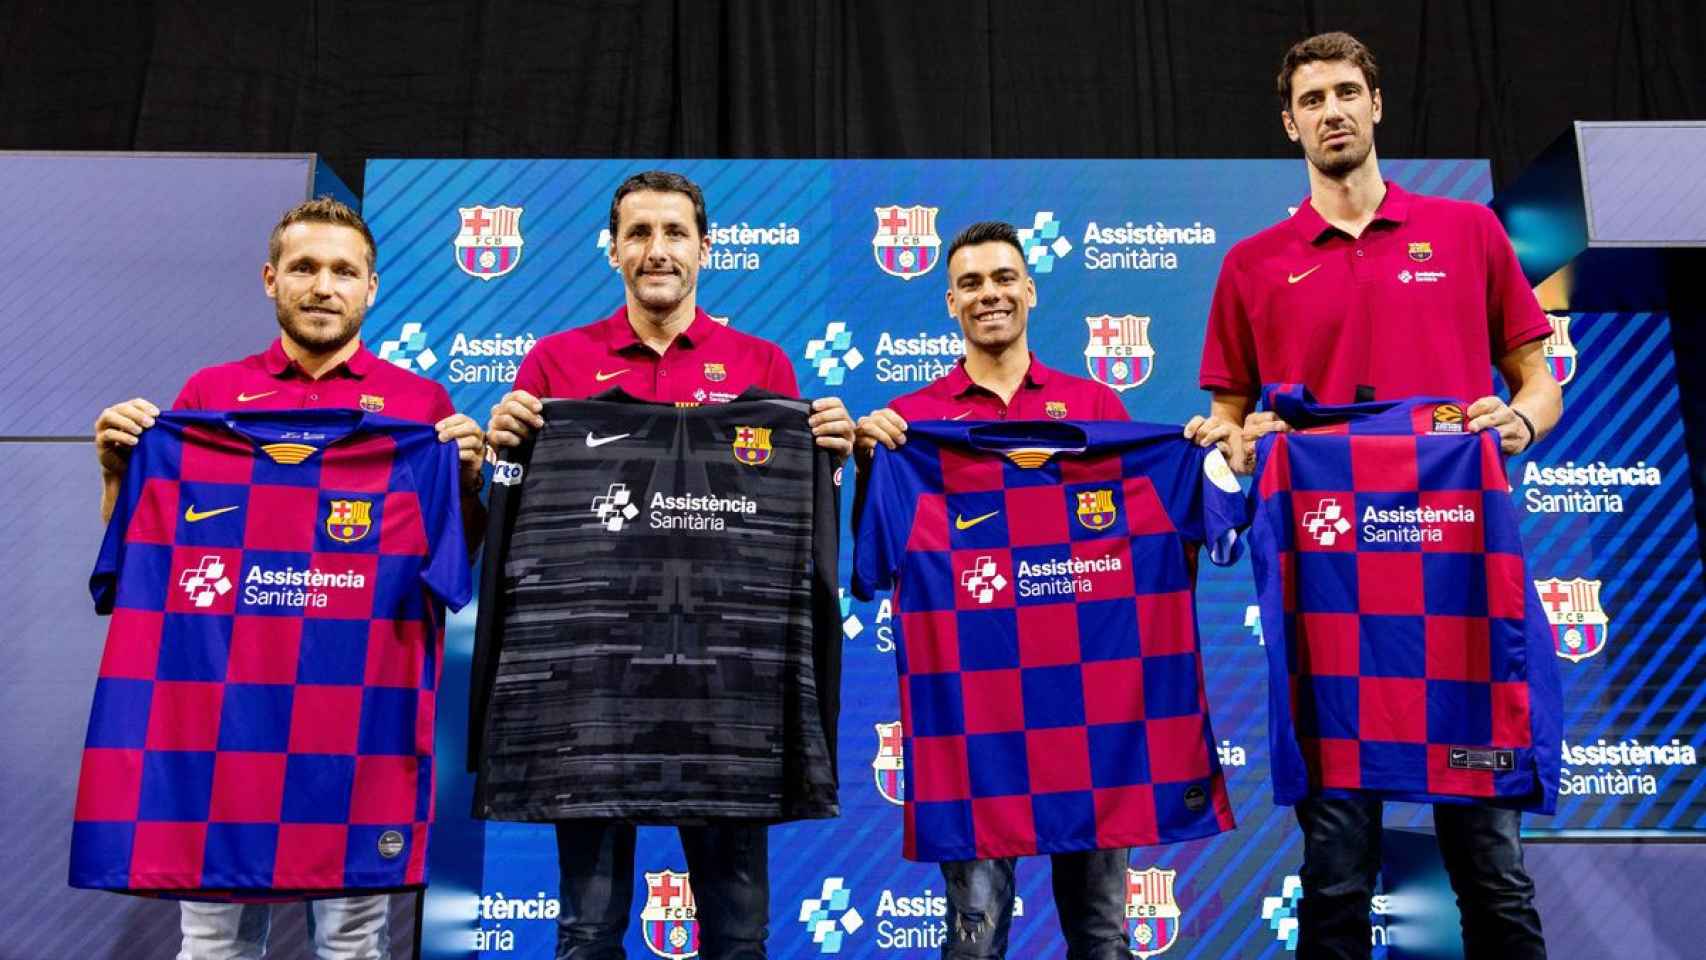 Una imagen de los cuatro capitanes de las secciones profesionales del Barça / FC Barcelona